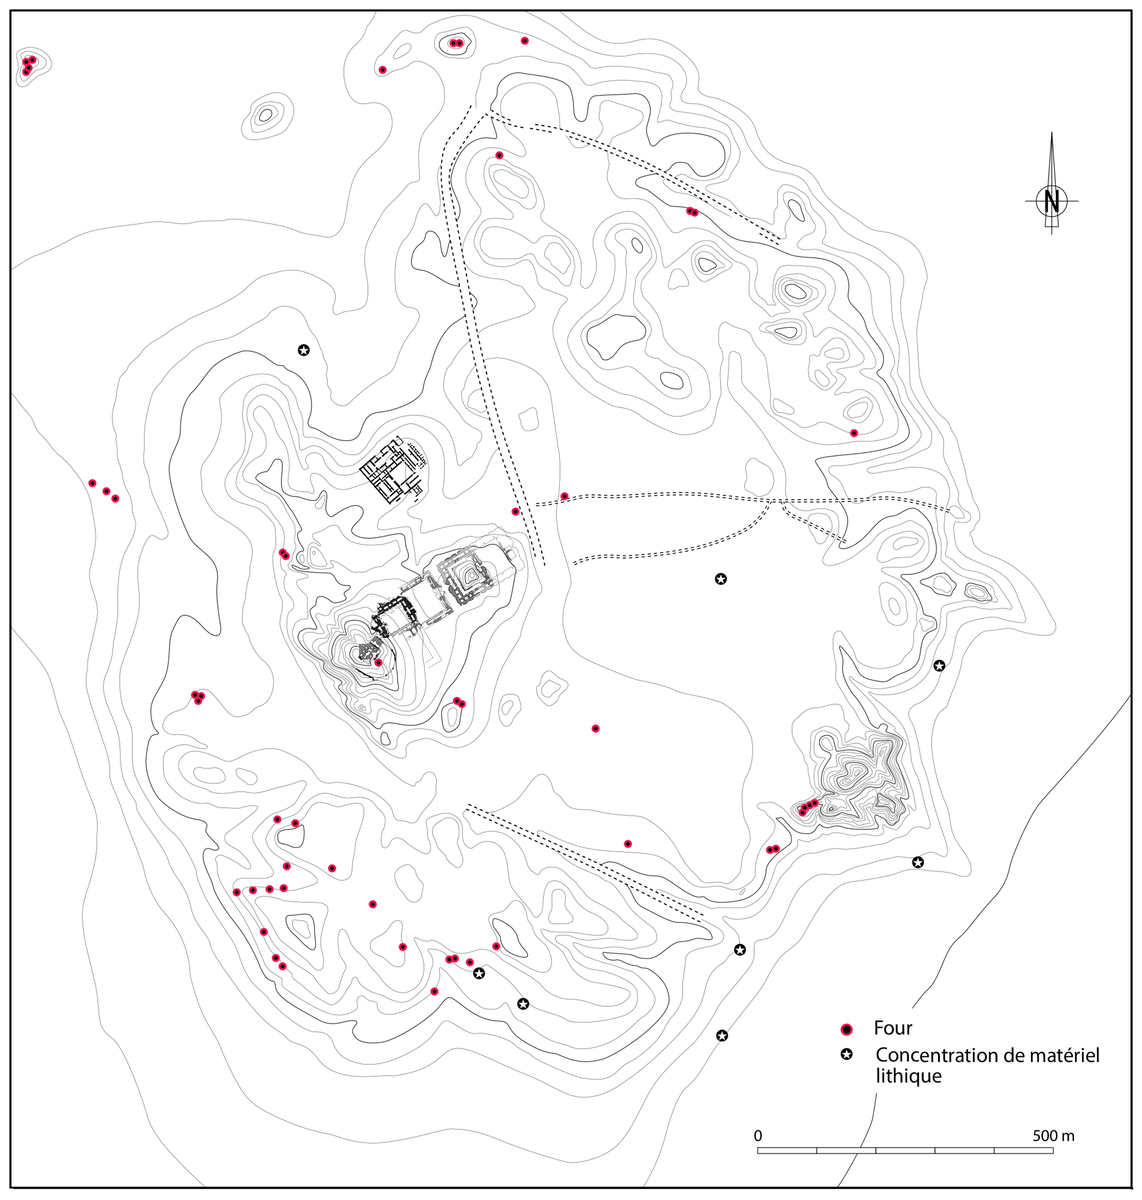 Fours et ateliers. © Mission Archéologique française de Larsa-‘Oueili, d’après carte publiée dans Huot, 2014, p. 4, fig. 3 (DAO Hélène David-Cuny)